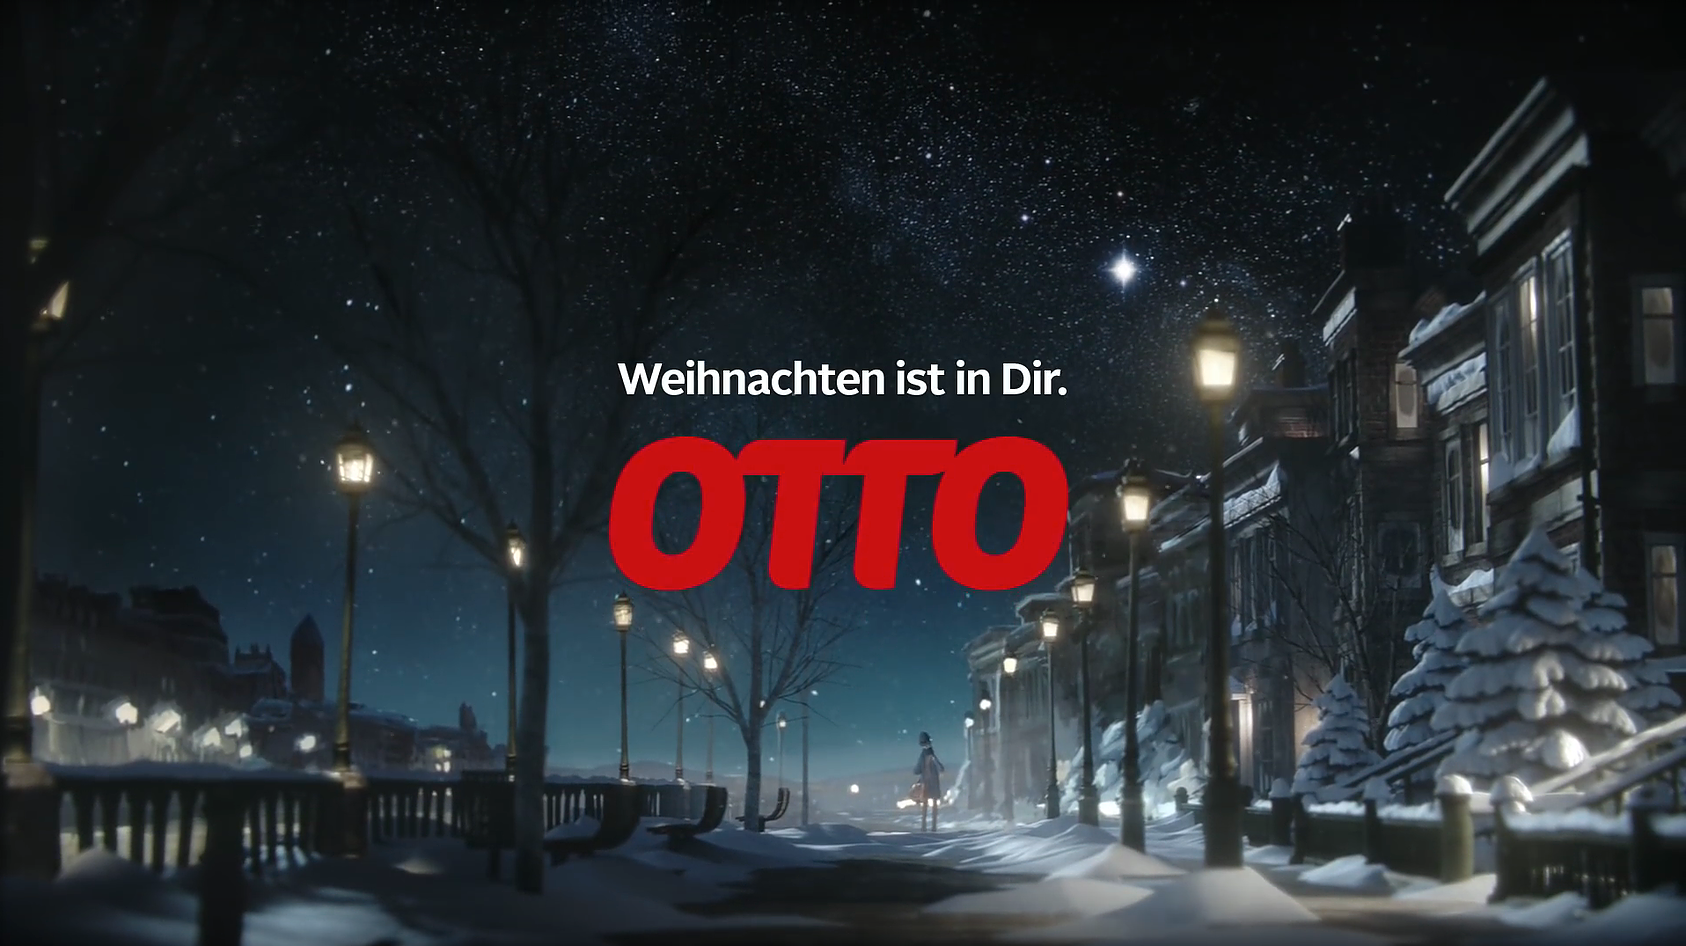 Otto - Weihnachten ist in dir